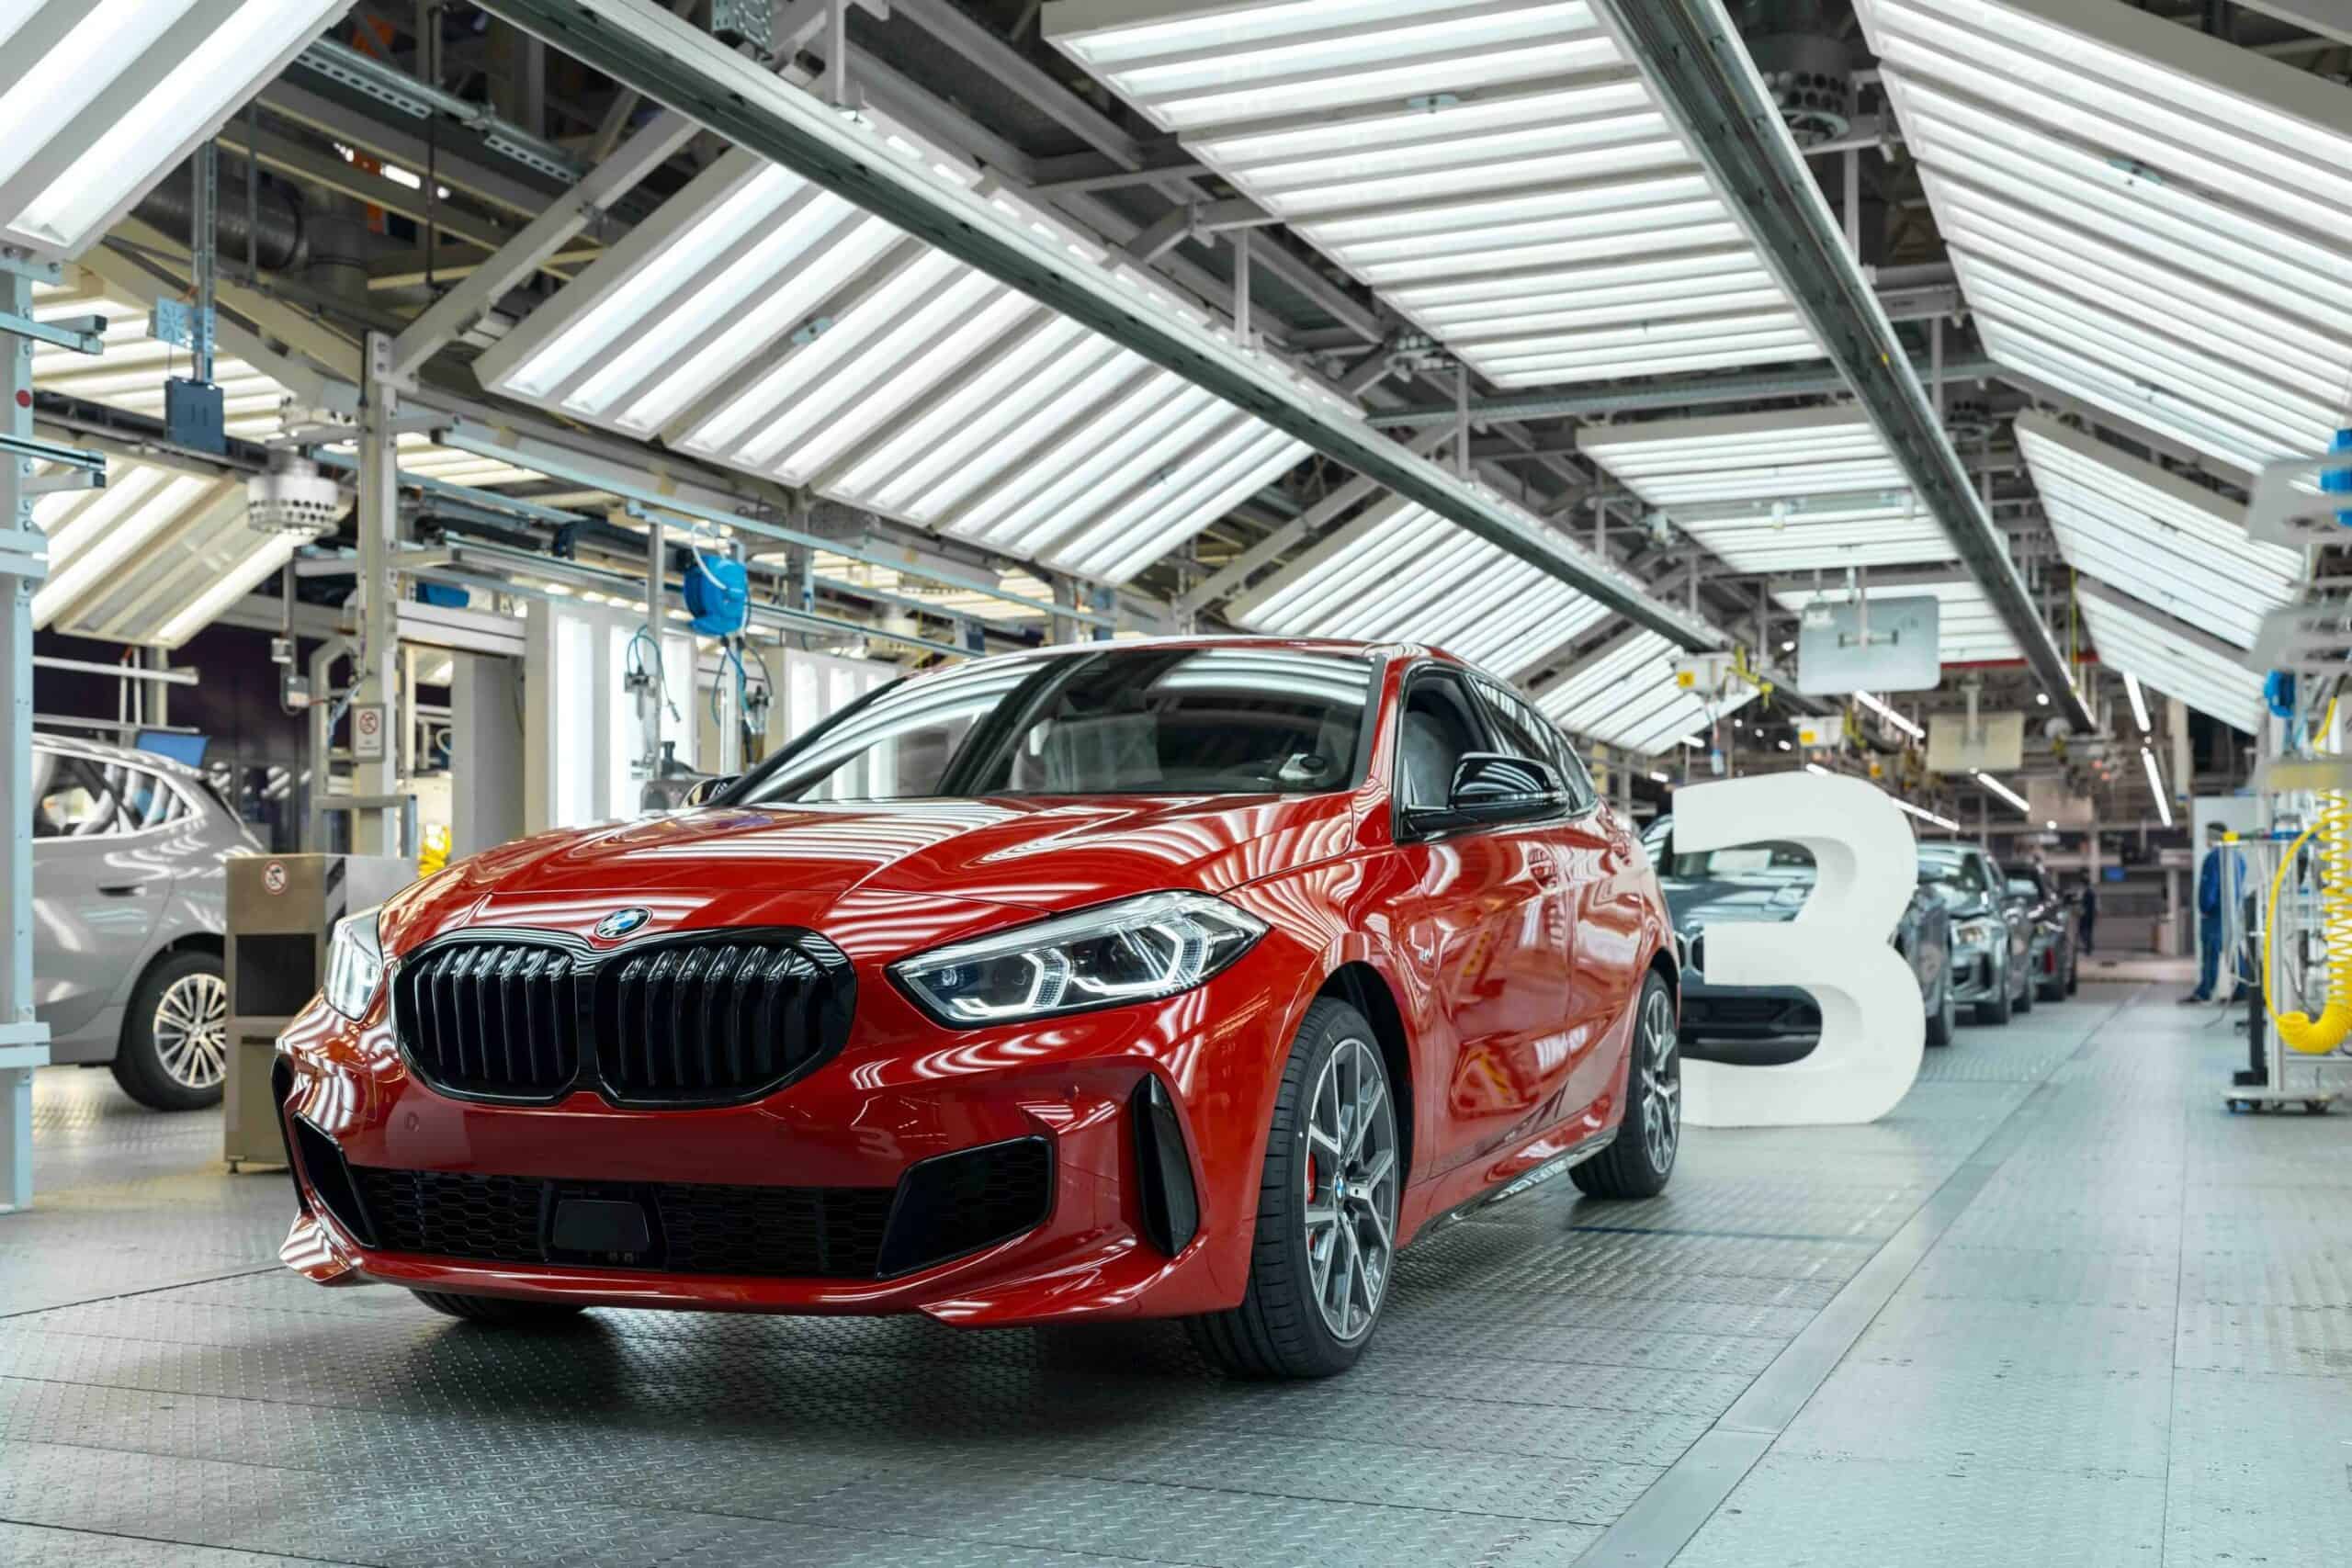 BMW Plant Leipzig 3333333 vehicle 6 scaled